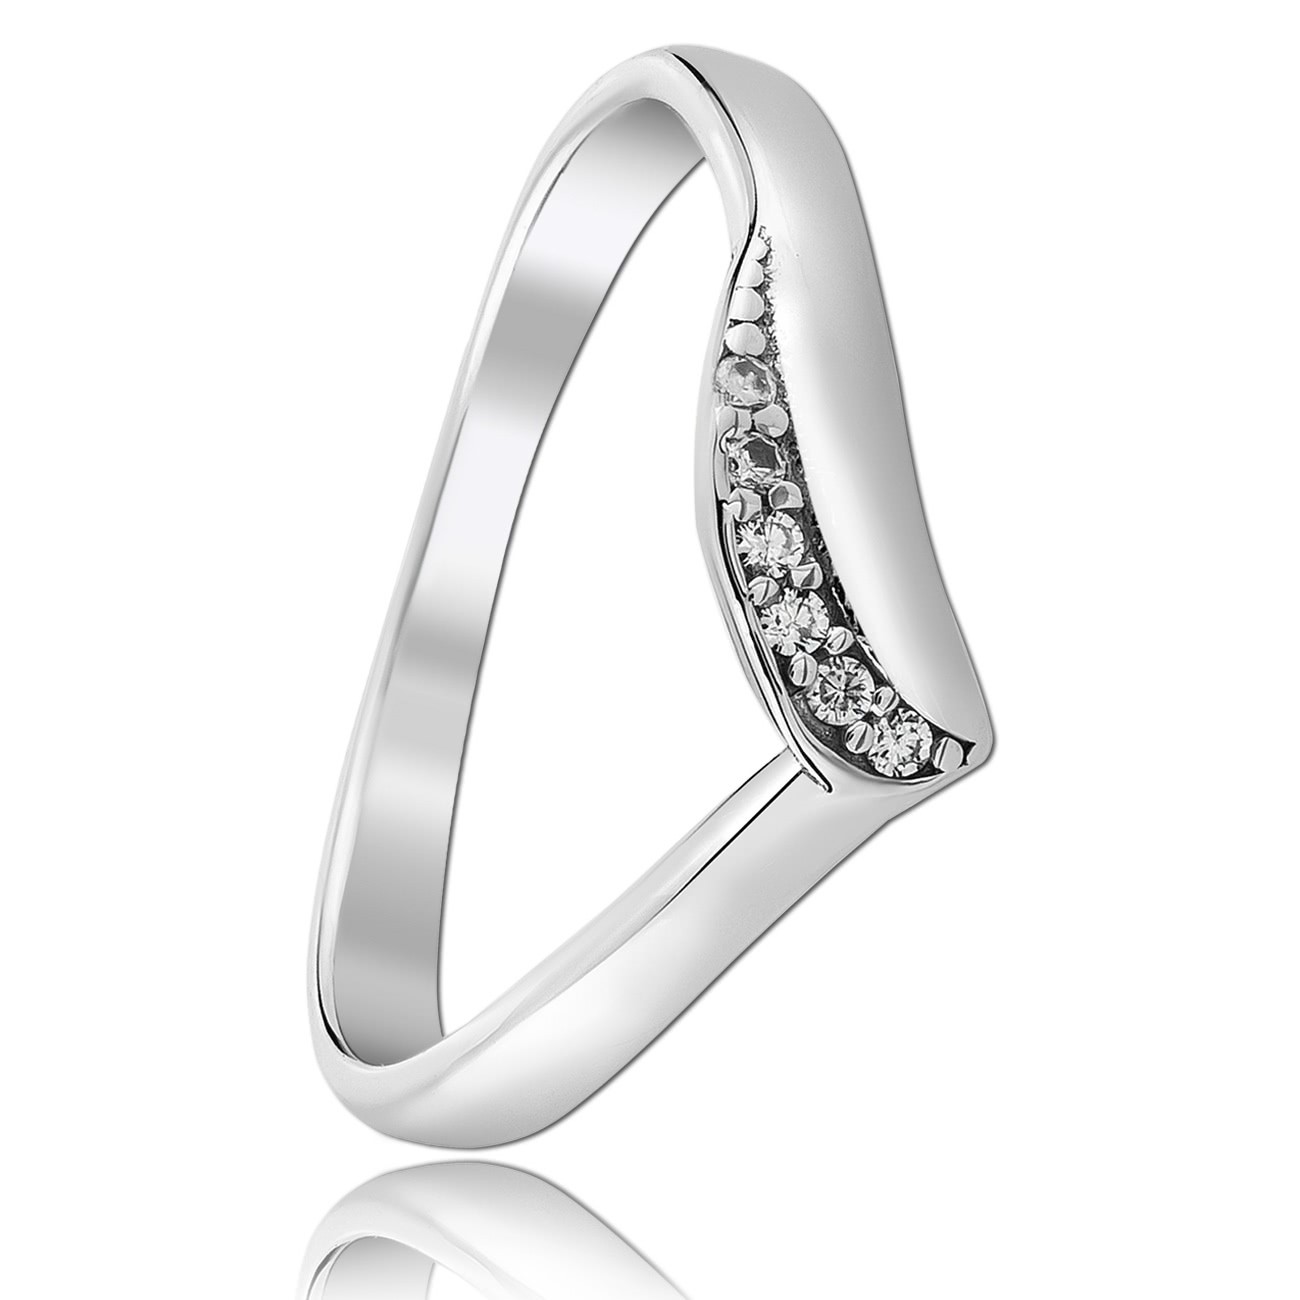 Balia Damen Wave Ring aus 925 Silber Zirkonia weiß Gr.58 BAR026W58